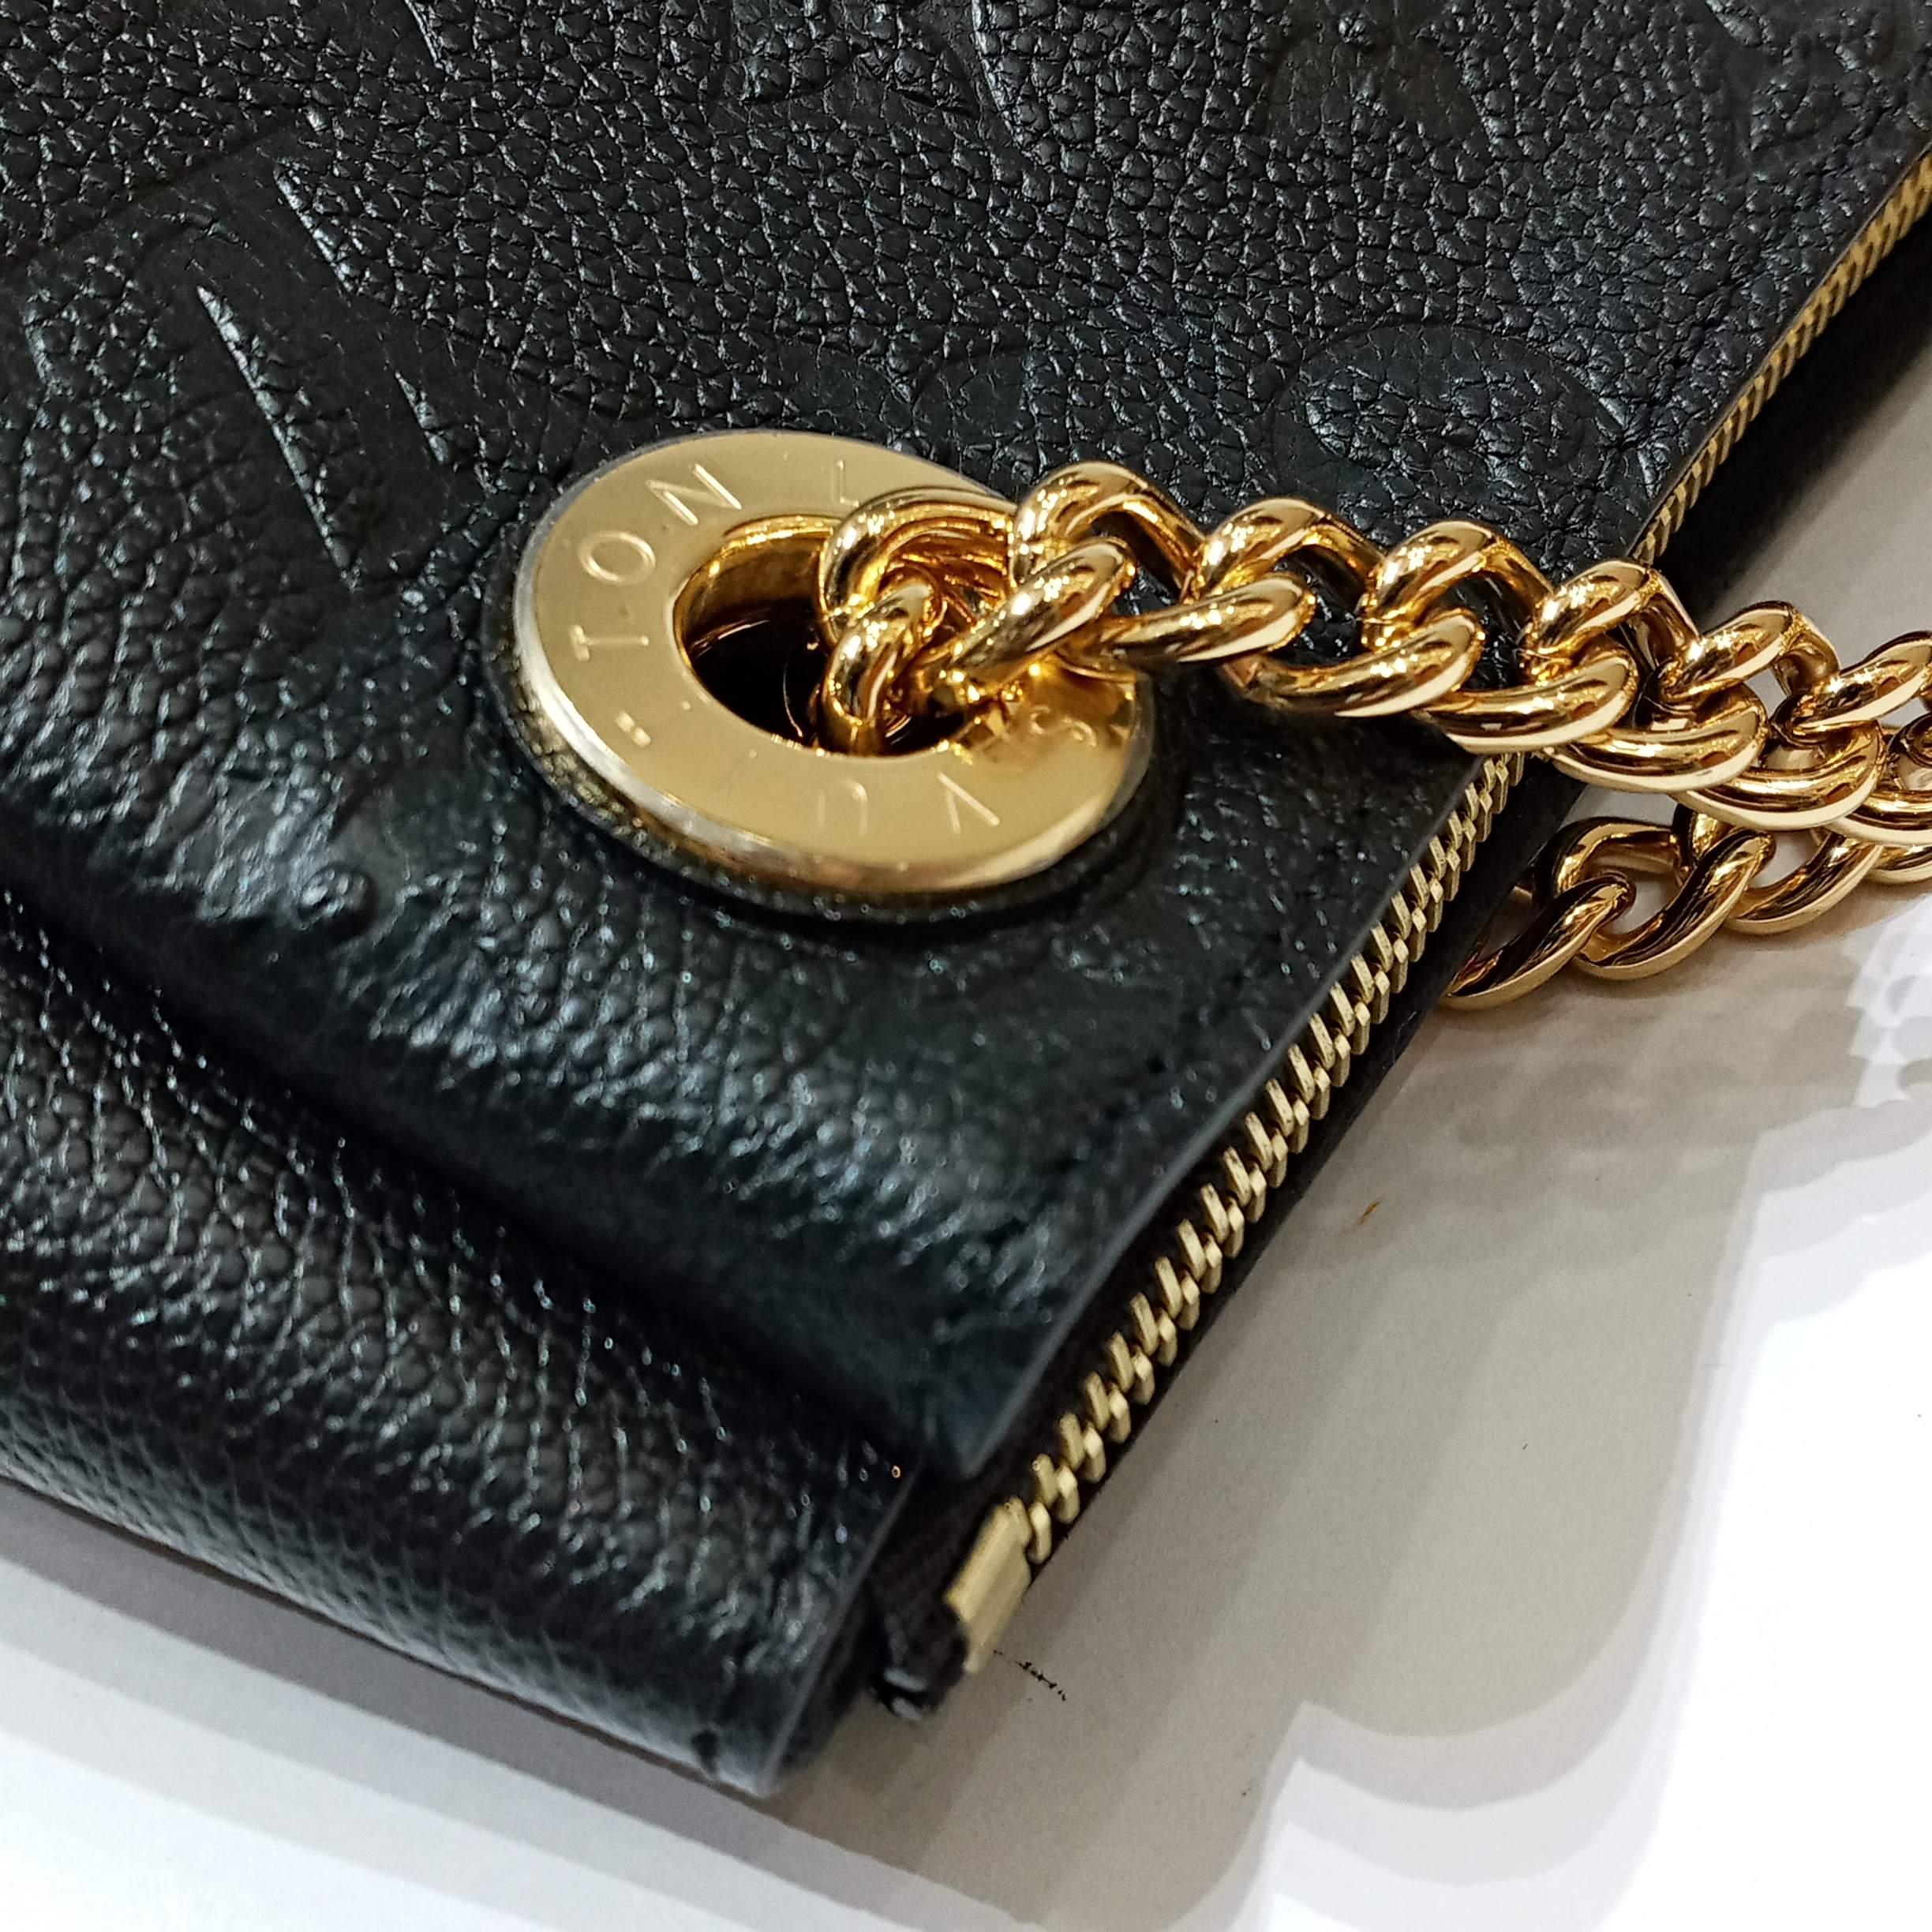 Authenticated Used Louis Vuitton Surennes BB Chain Shoulder Bag Noir M43748  Monogram Empreinte Leather 